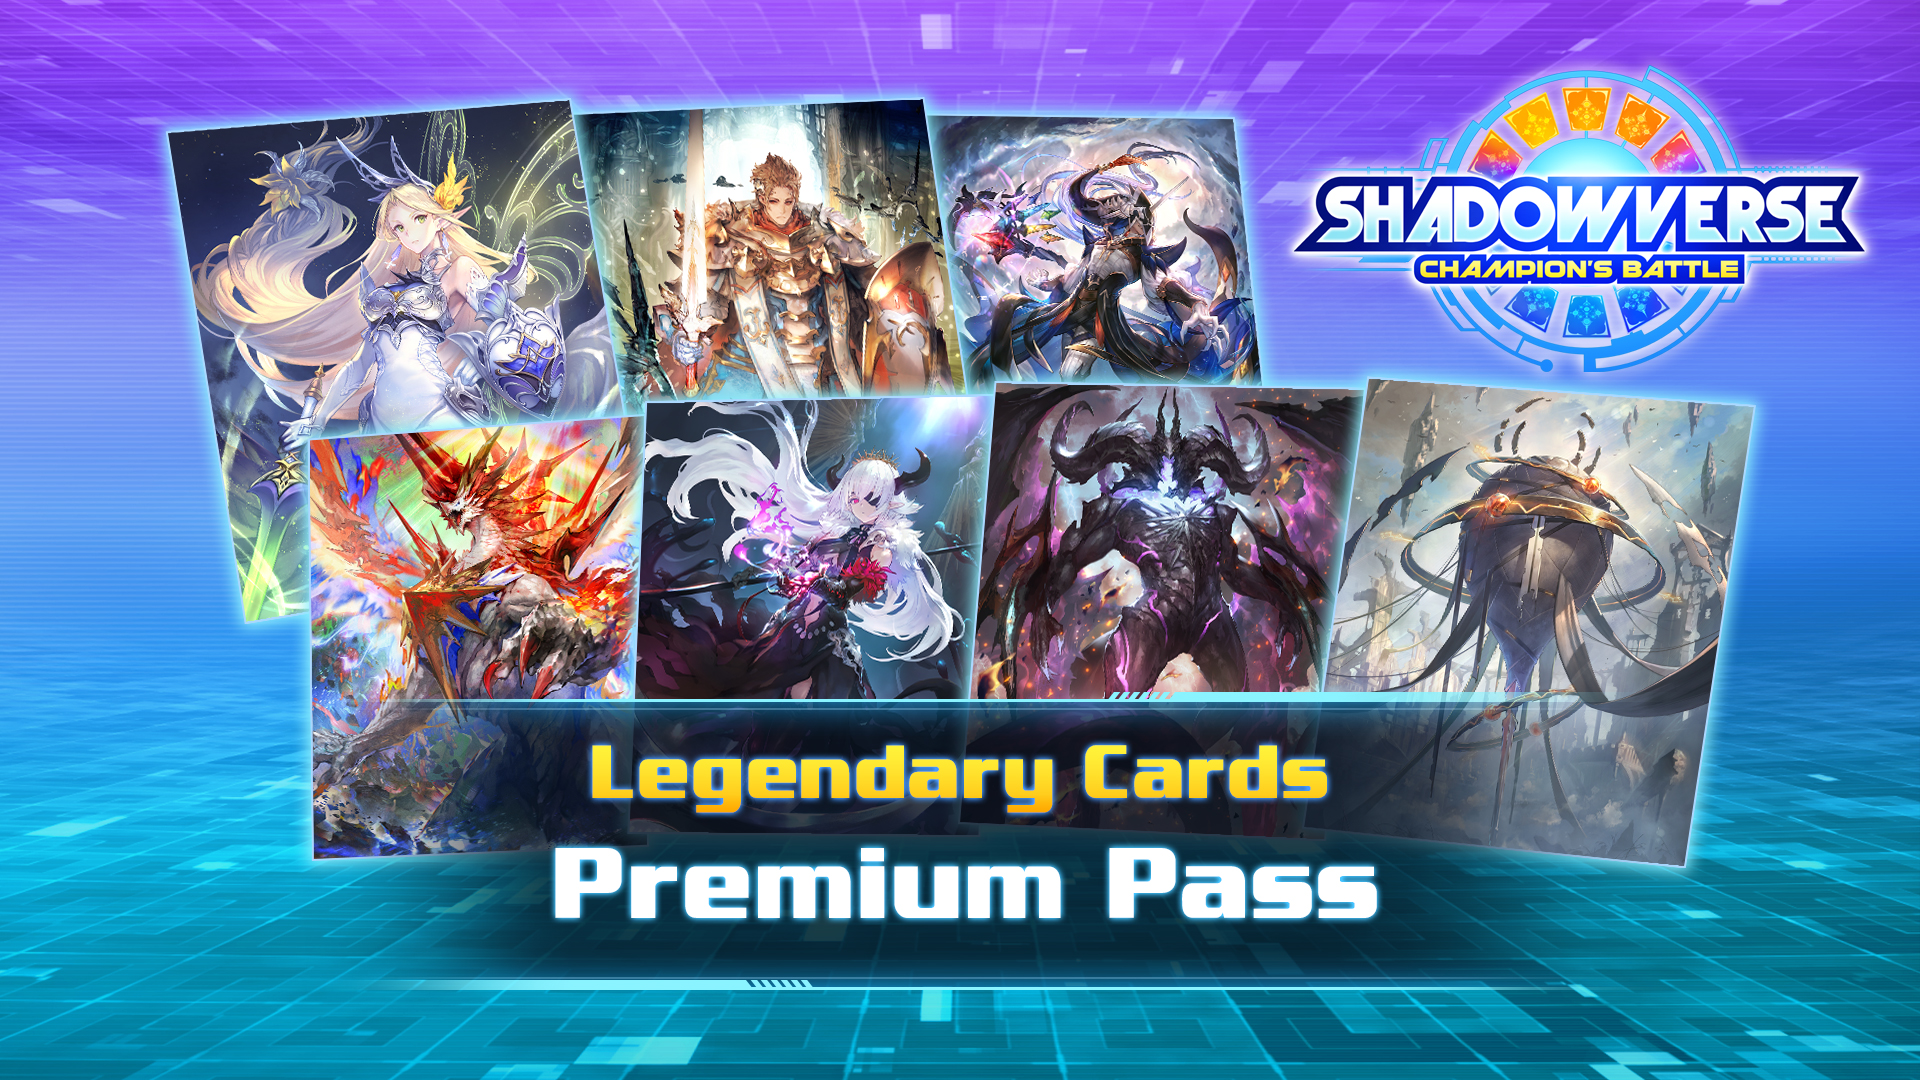 Legendary Cards Premium Pass